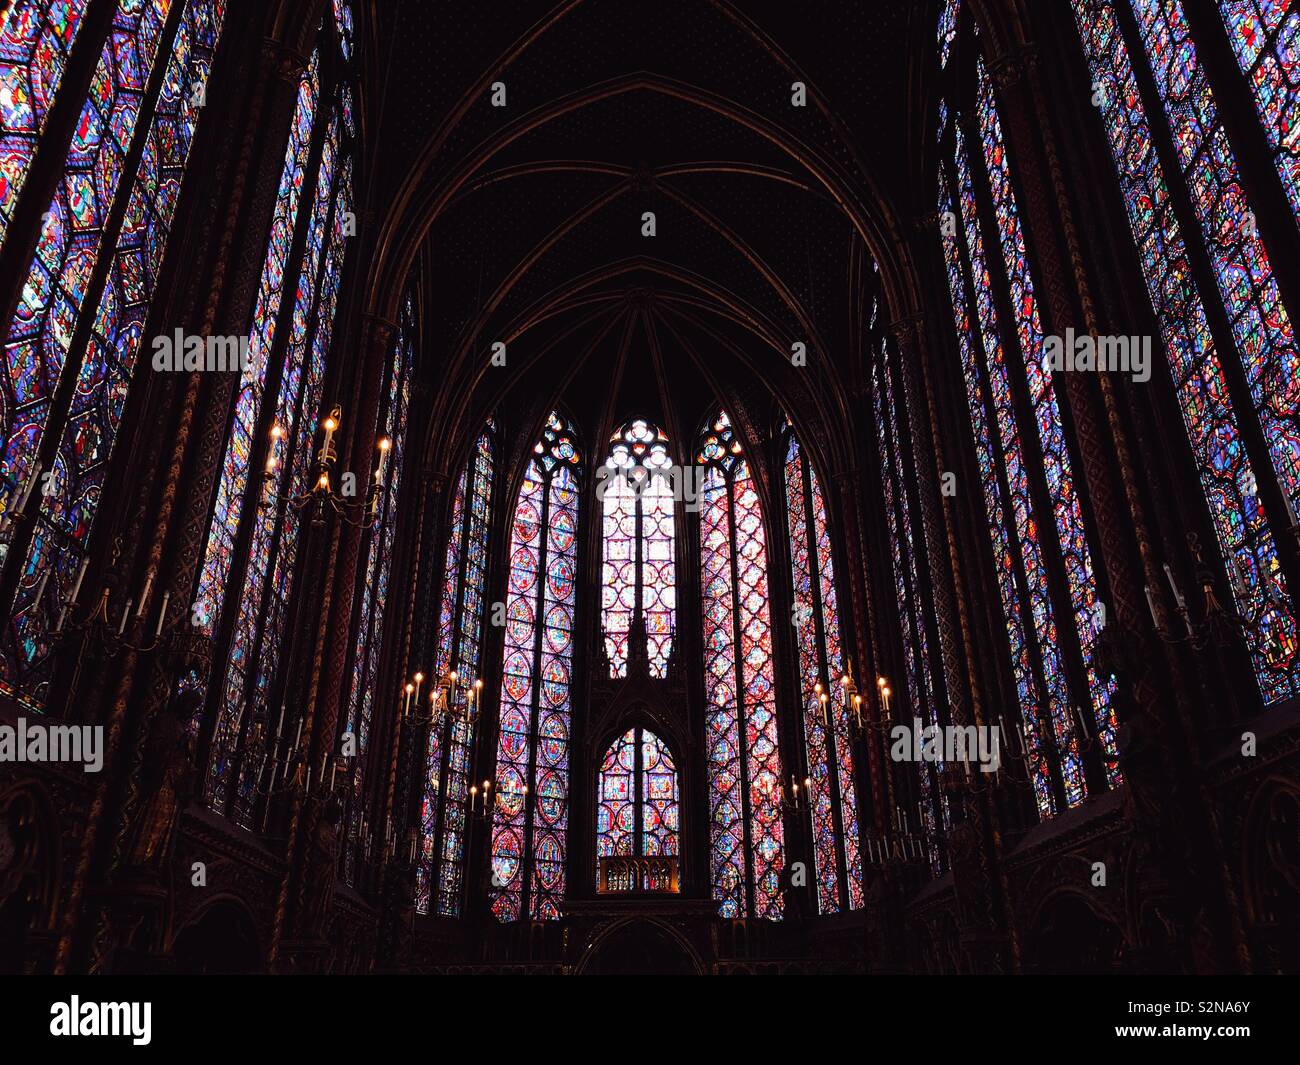 Innenraum der beeindruckenden Sainte Chapelle, eine königliche Kapelle im gotischen Stil, in den mittelalterlichen Palais de la Cité, die Residenz der Könige von Frankreich Stockfoto